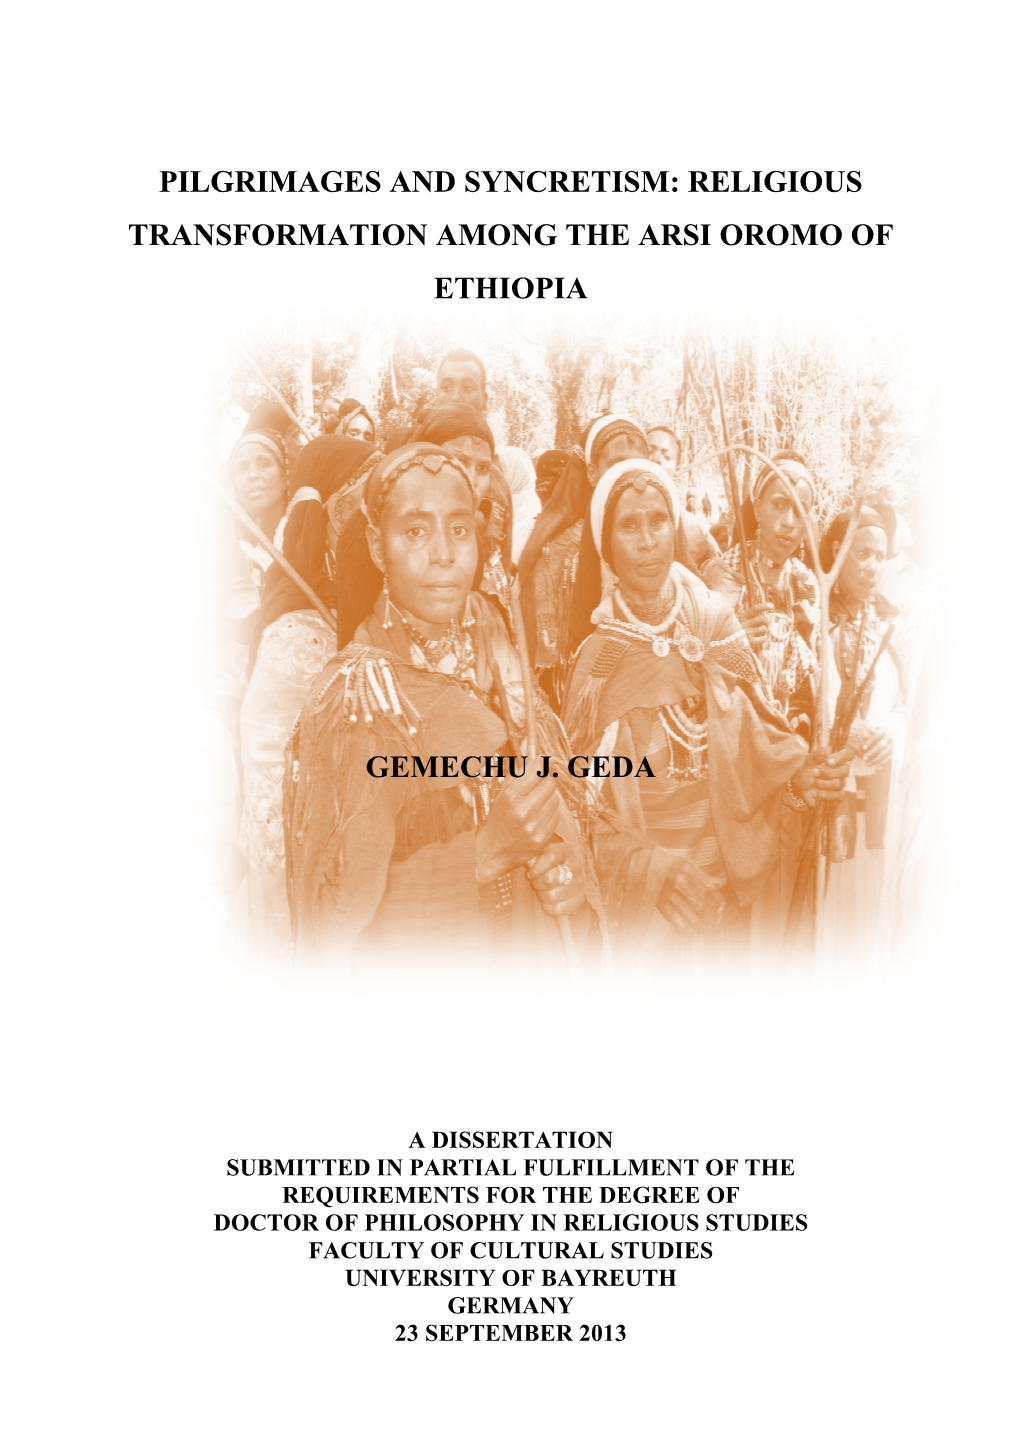 Religious Sformation Among the Arsi Oromo of Ethiopia Gemechu J. Geda